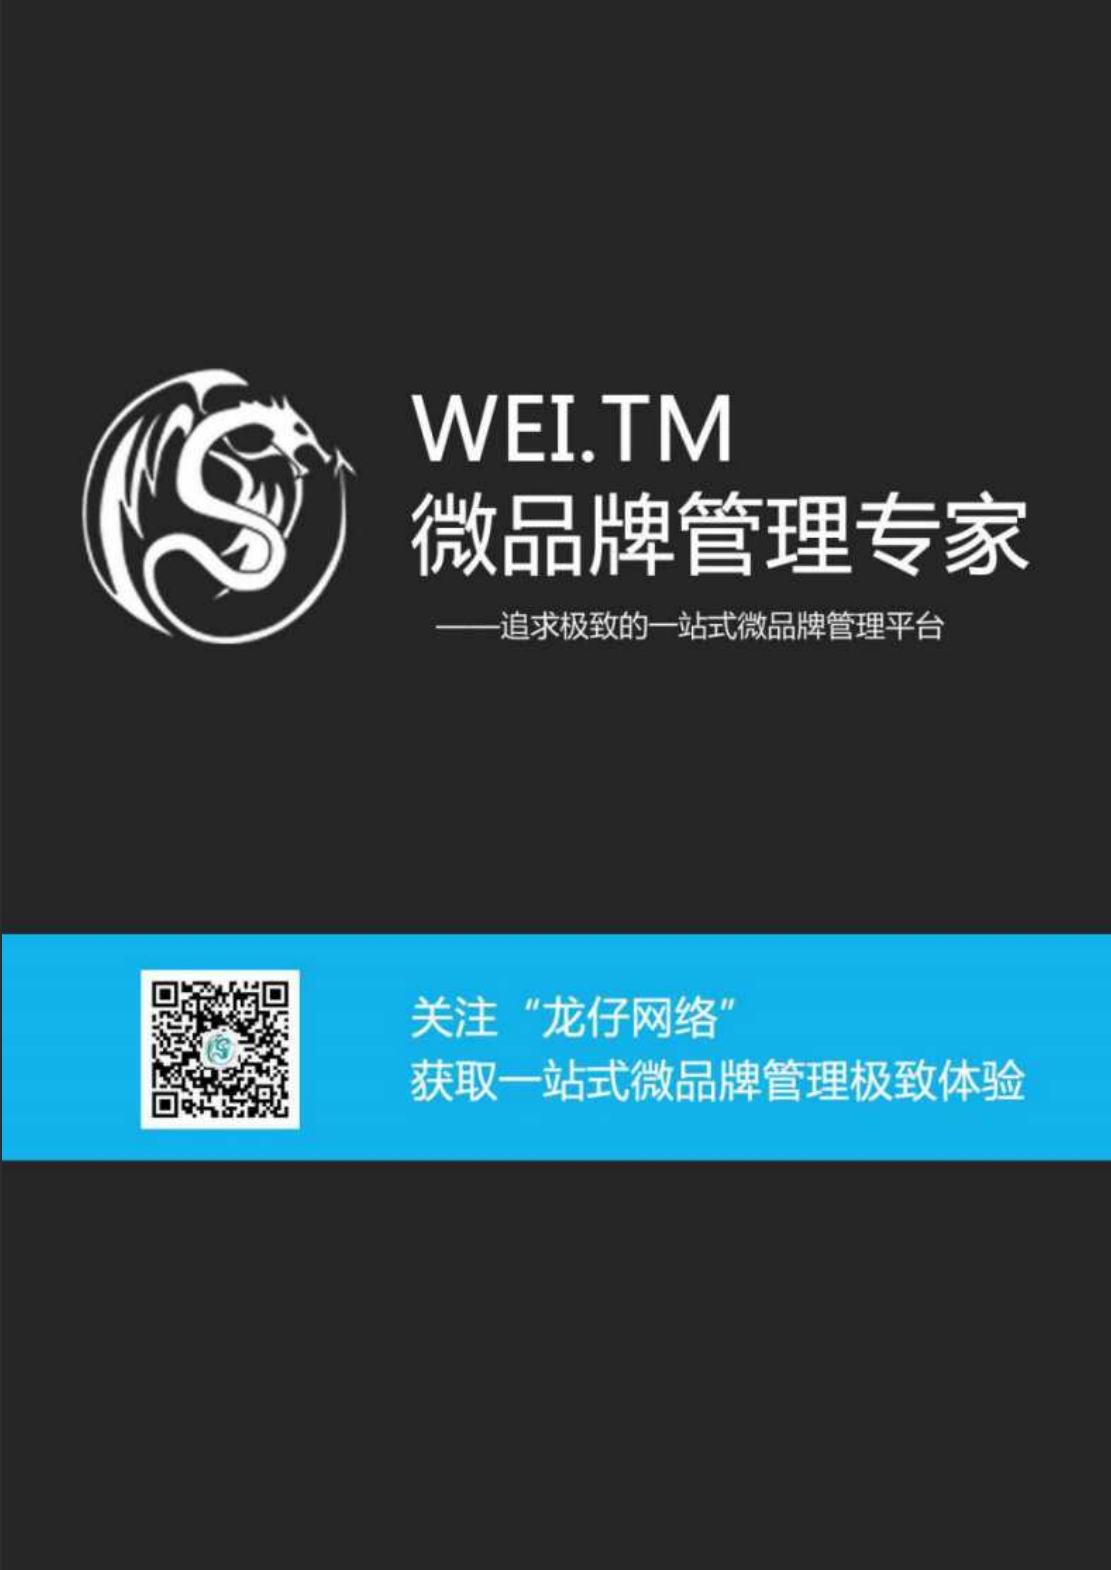 【国赛】WEI.TM微品牌管理专家